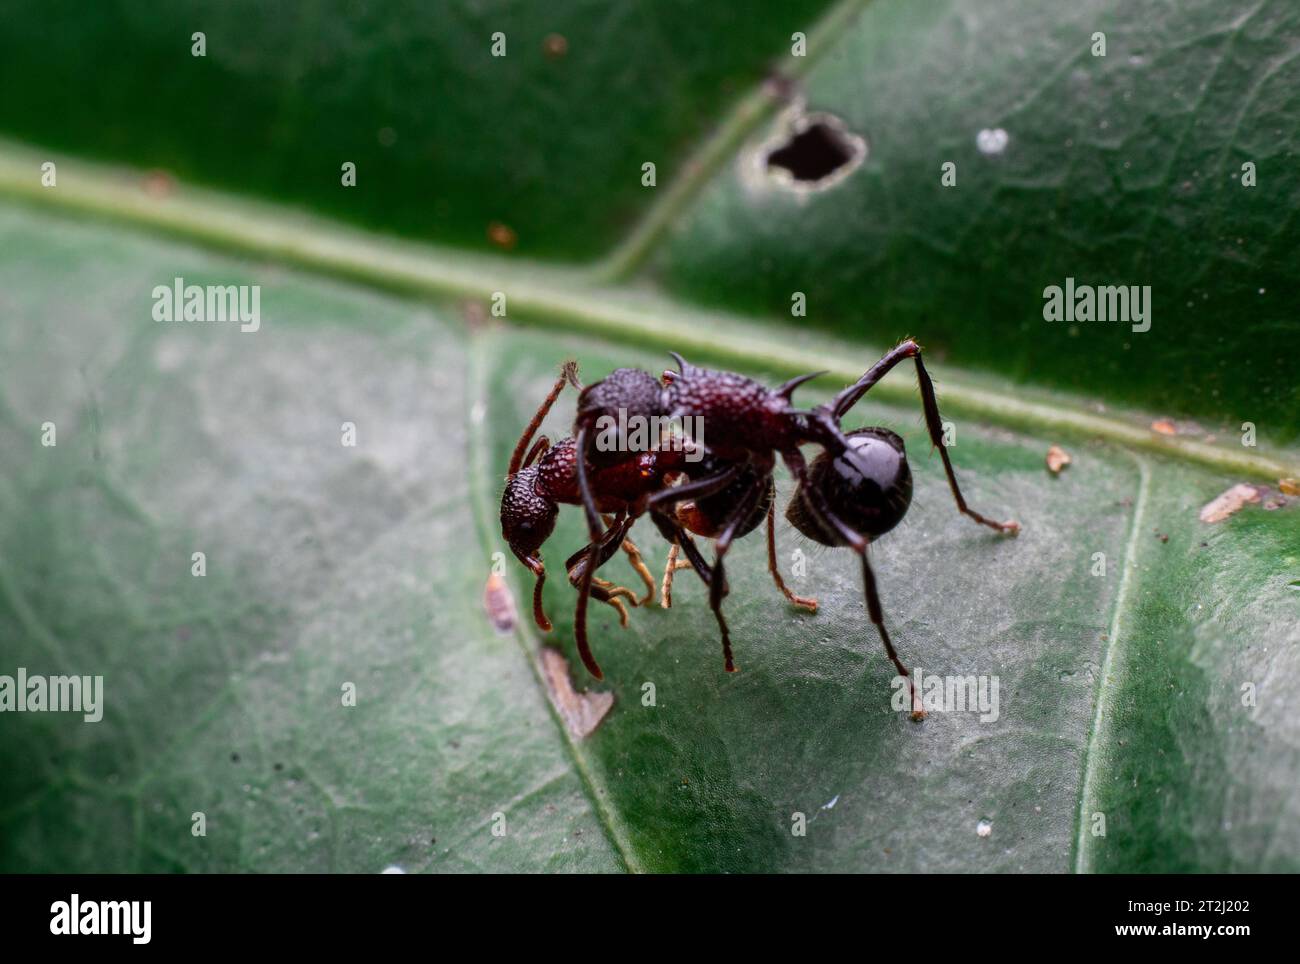 Ameisen kämpfen auf einem grünen Blatt Stockfoto